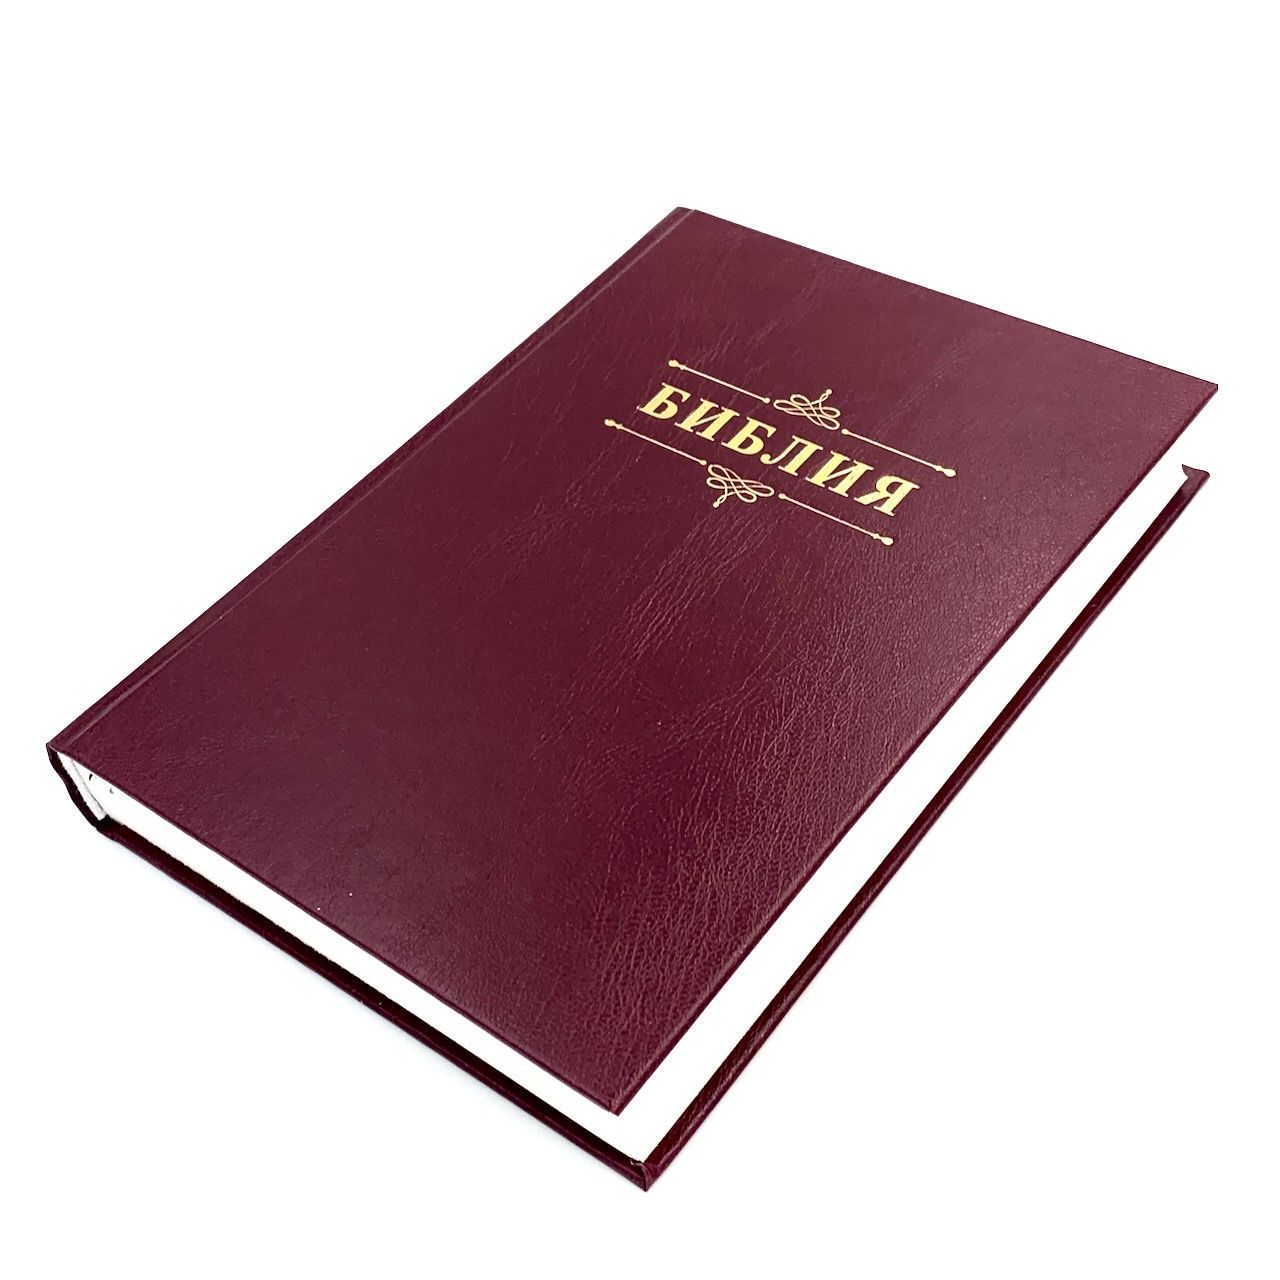 Библия 076 код 23076-2,  надпись "Библия" твердый переплет,  цвет бордо, размер 170x240 мм